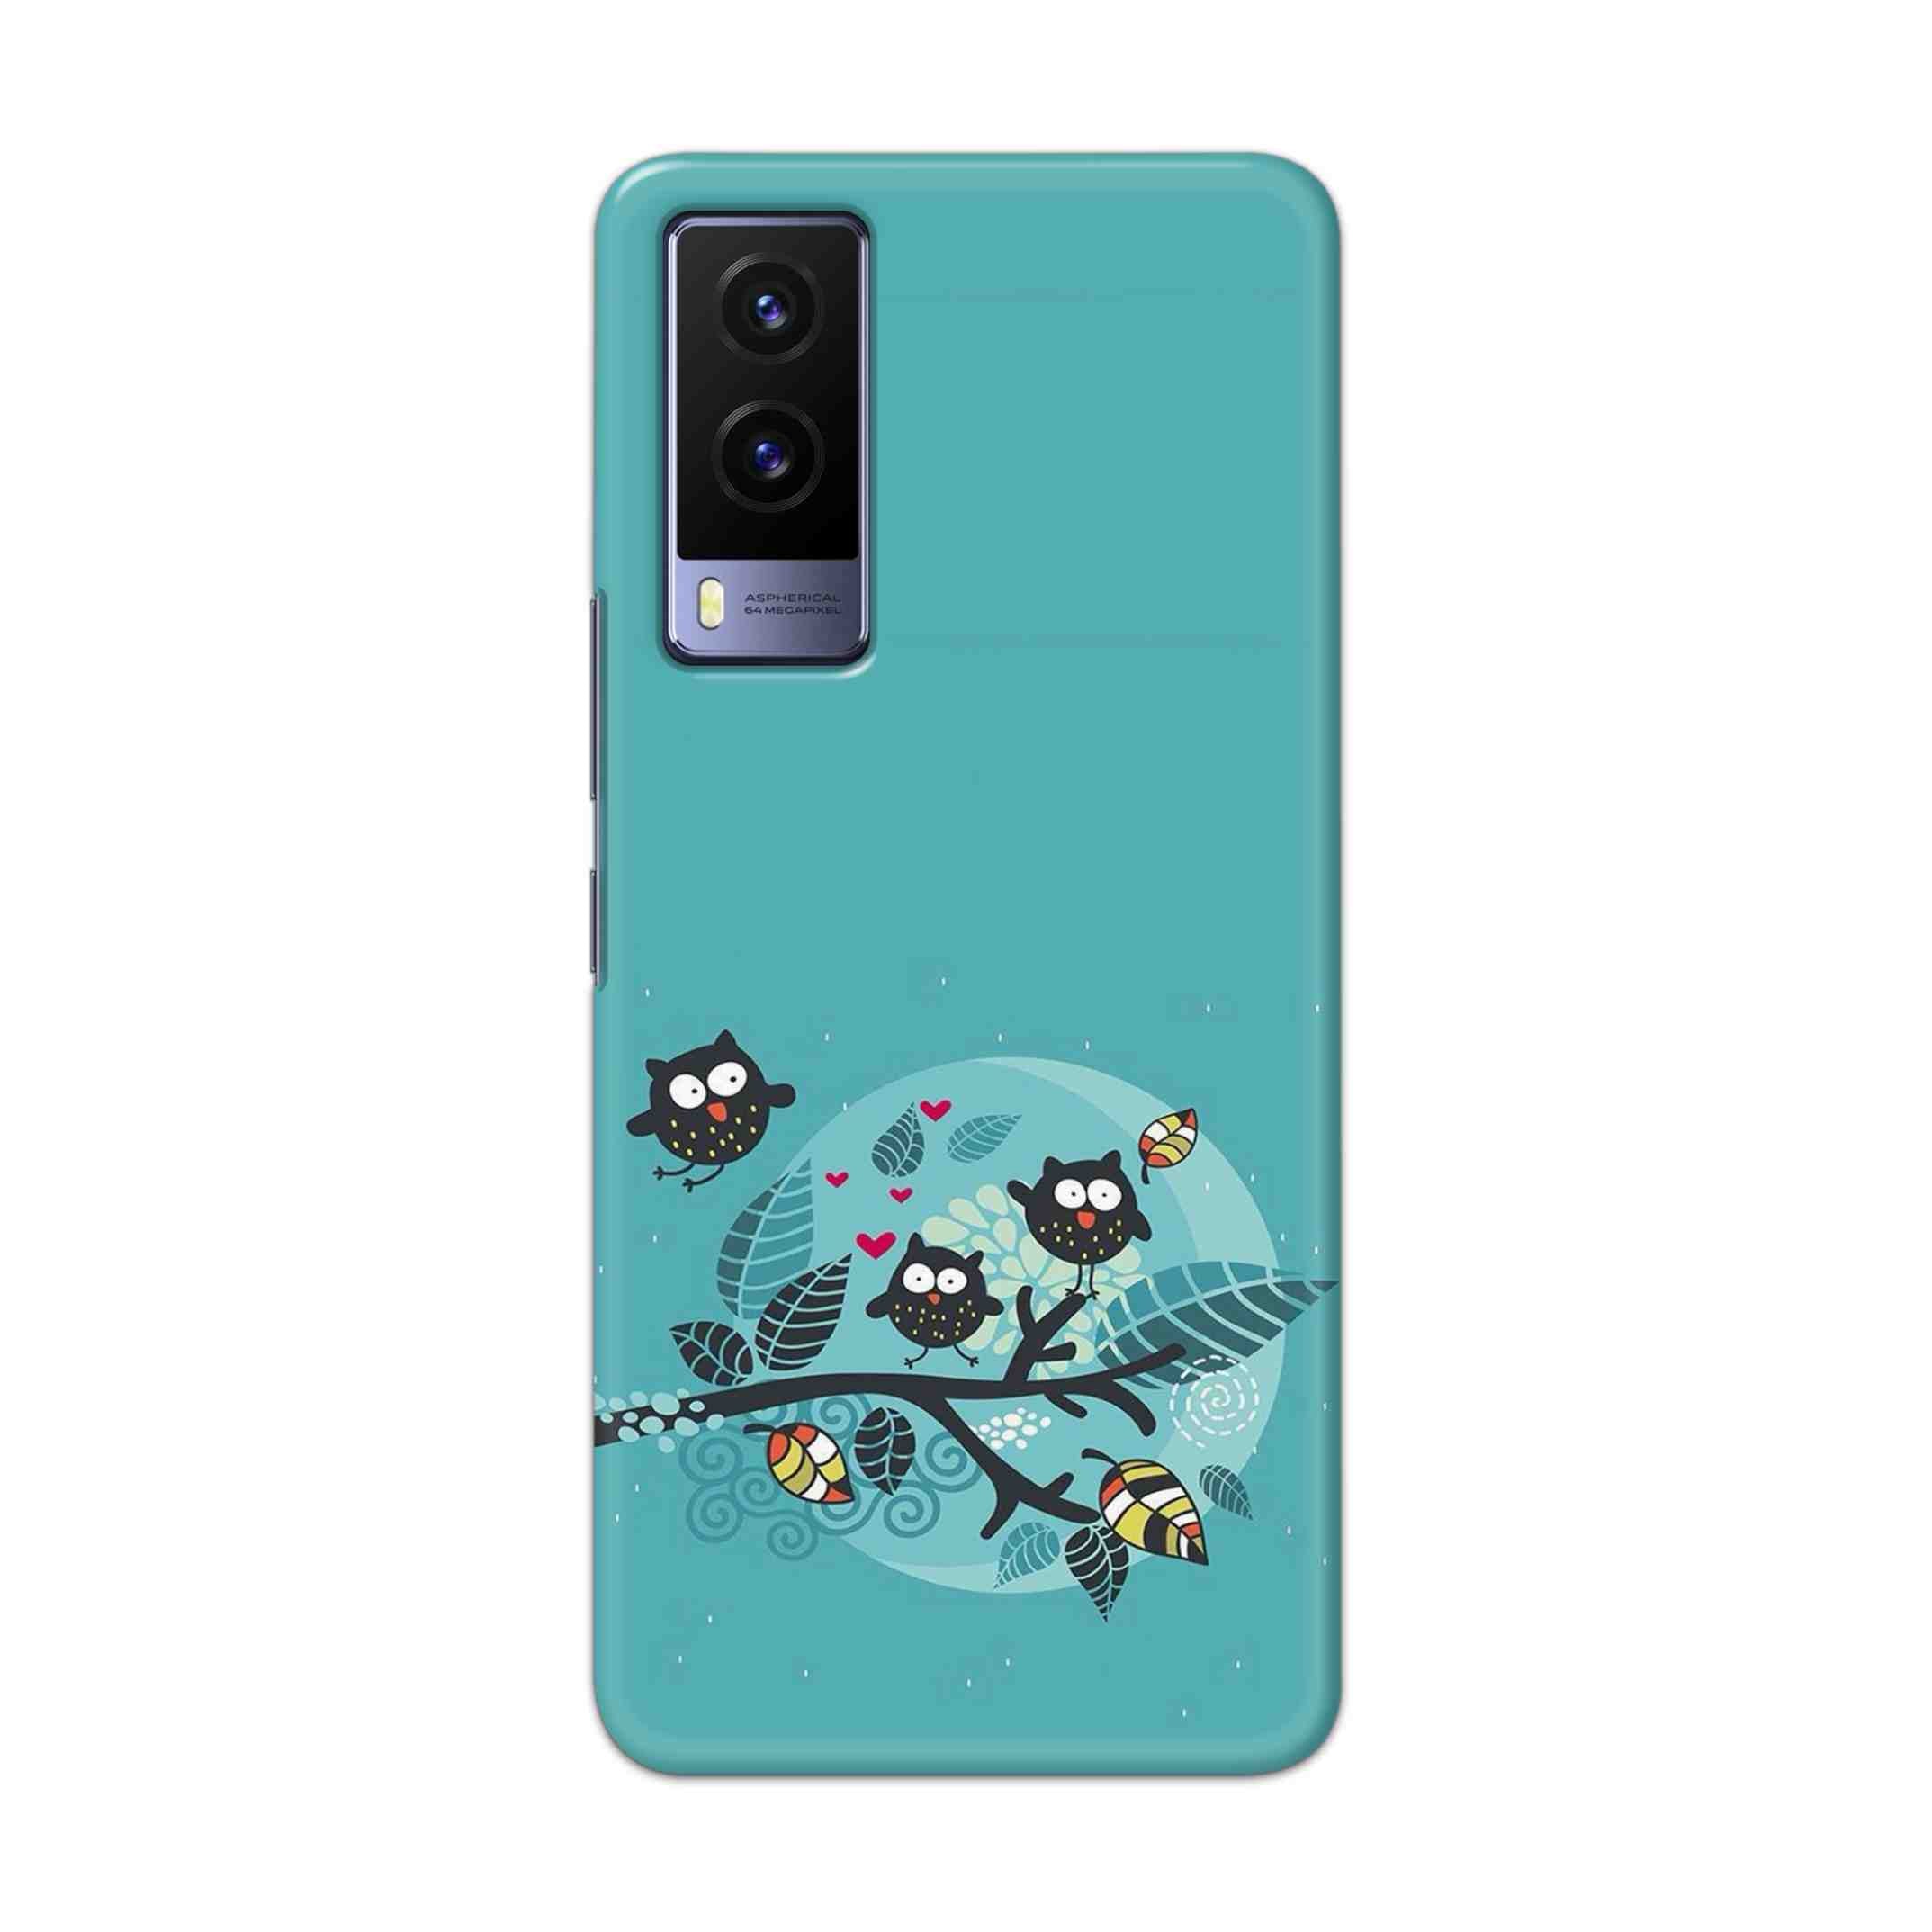 Buy Owl Hard Back Mobile Phone Case Cover For Vivo V21e 5G Online